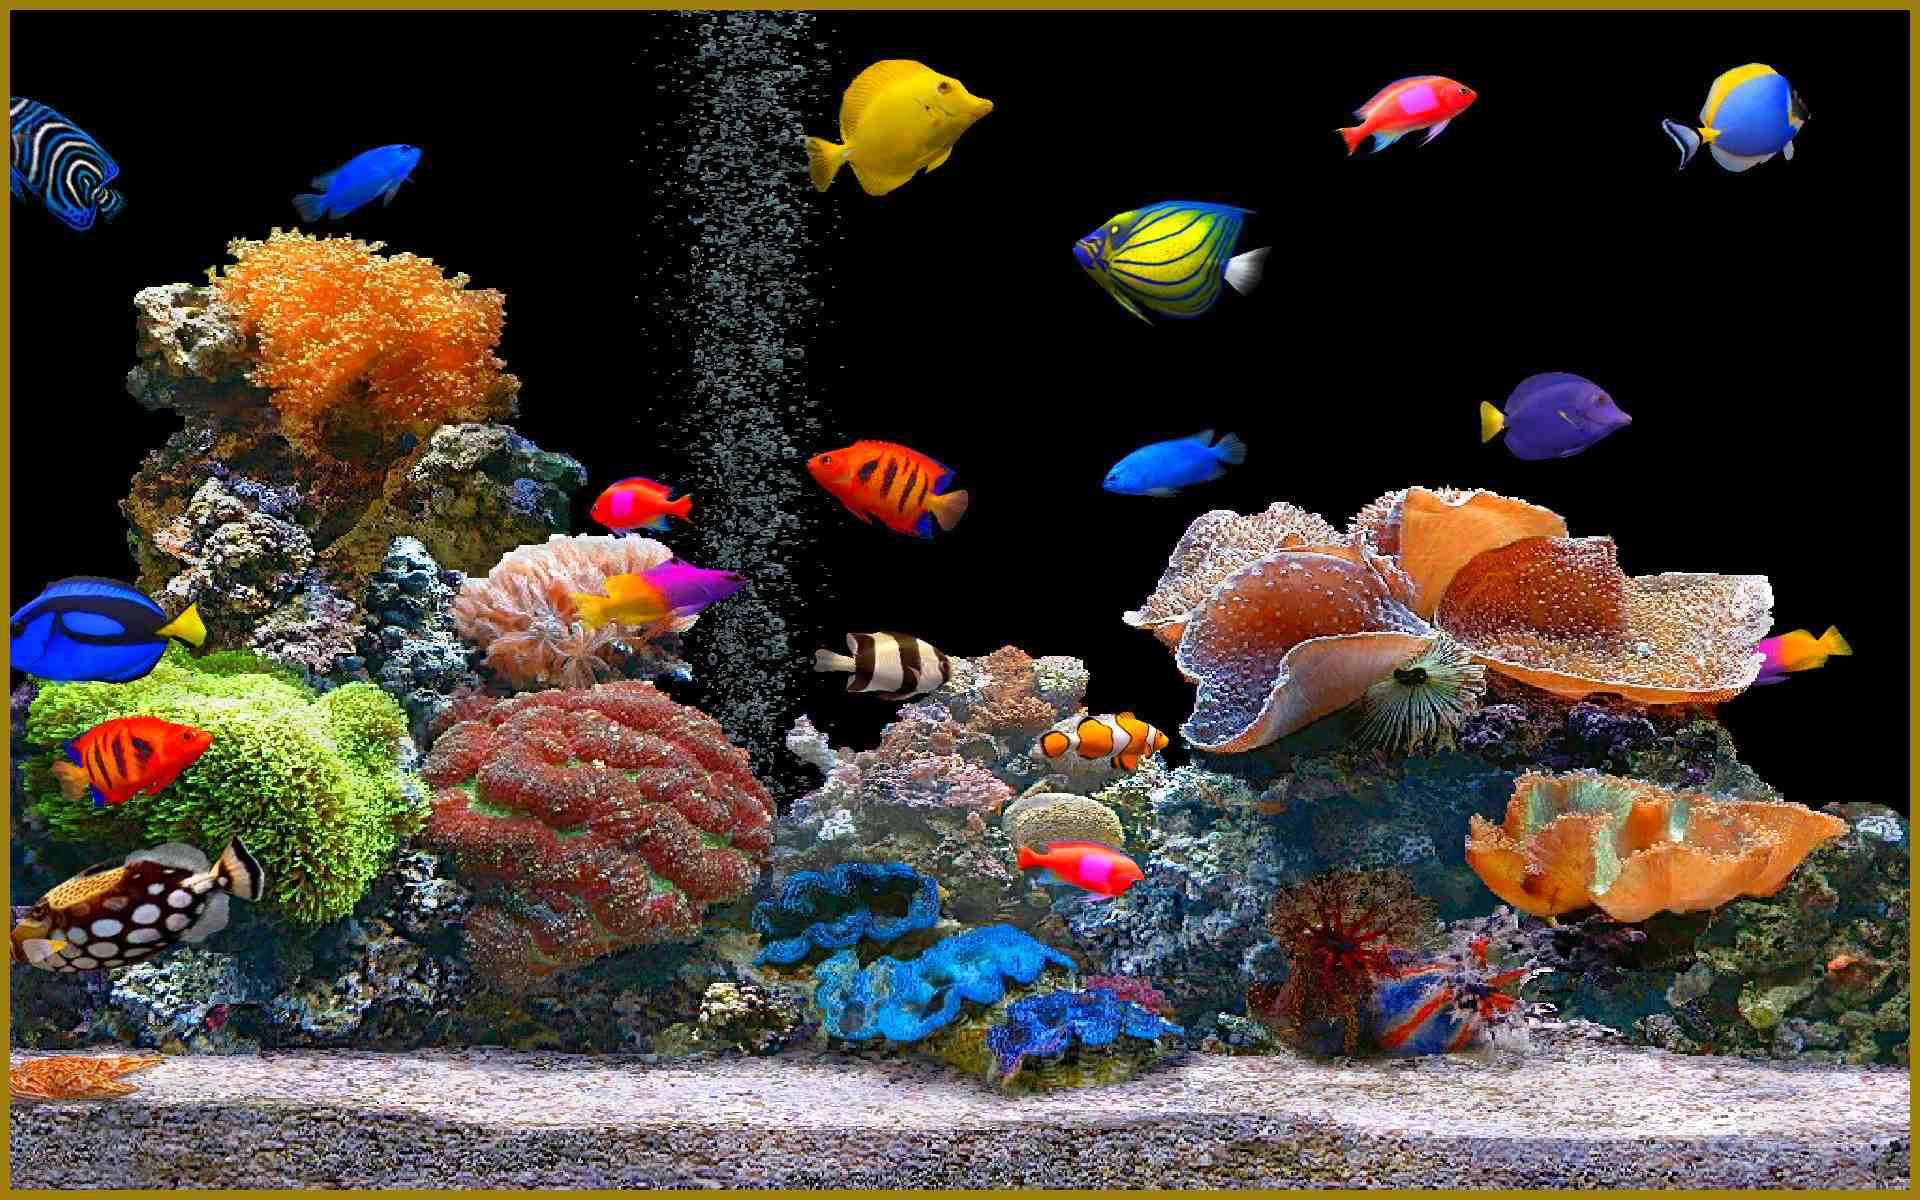 Comment oxygéner l'eau d'un aquarium sans pompe?